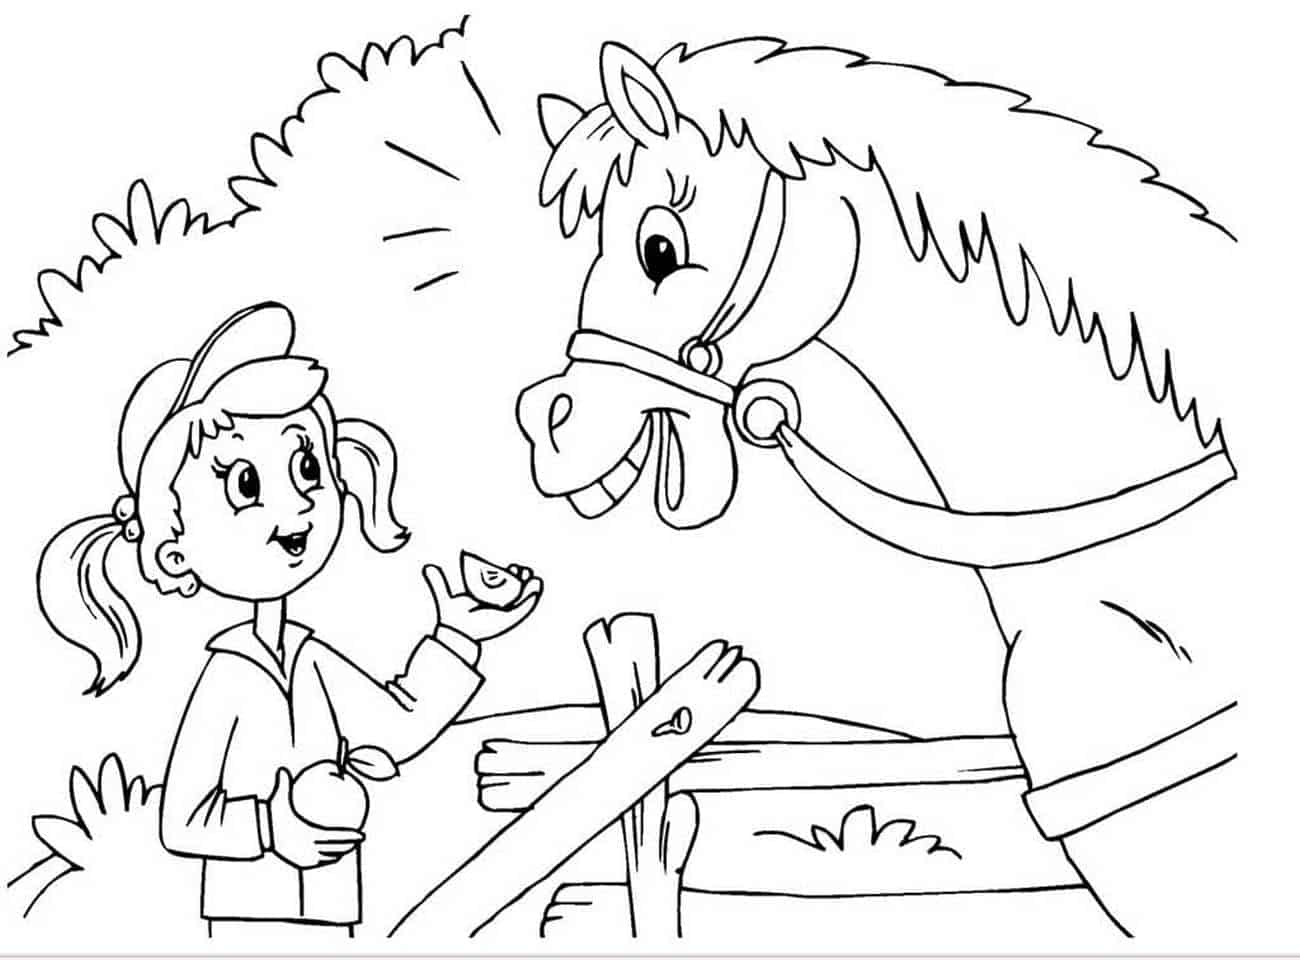 Desenho de Princesa e cavalo para Colorir - Colorir.com